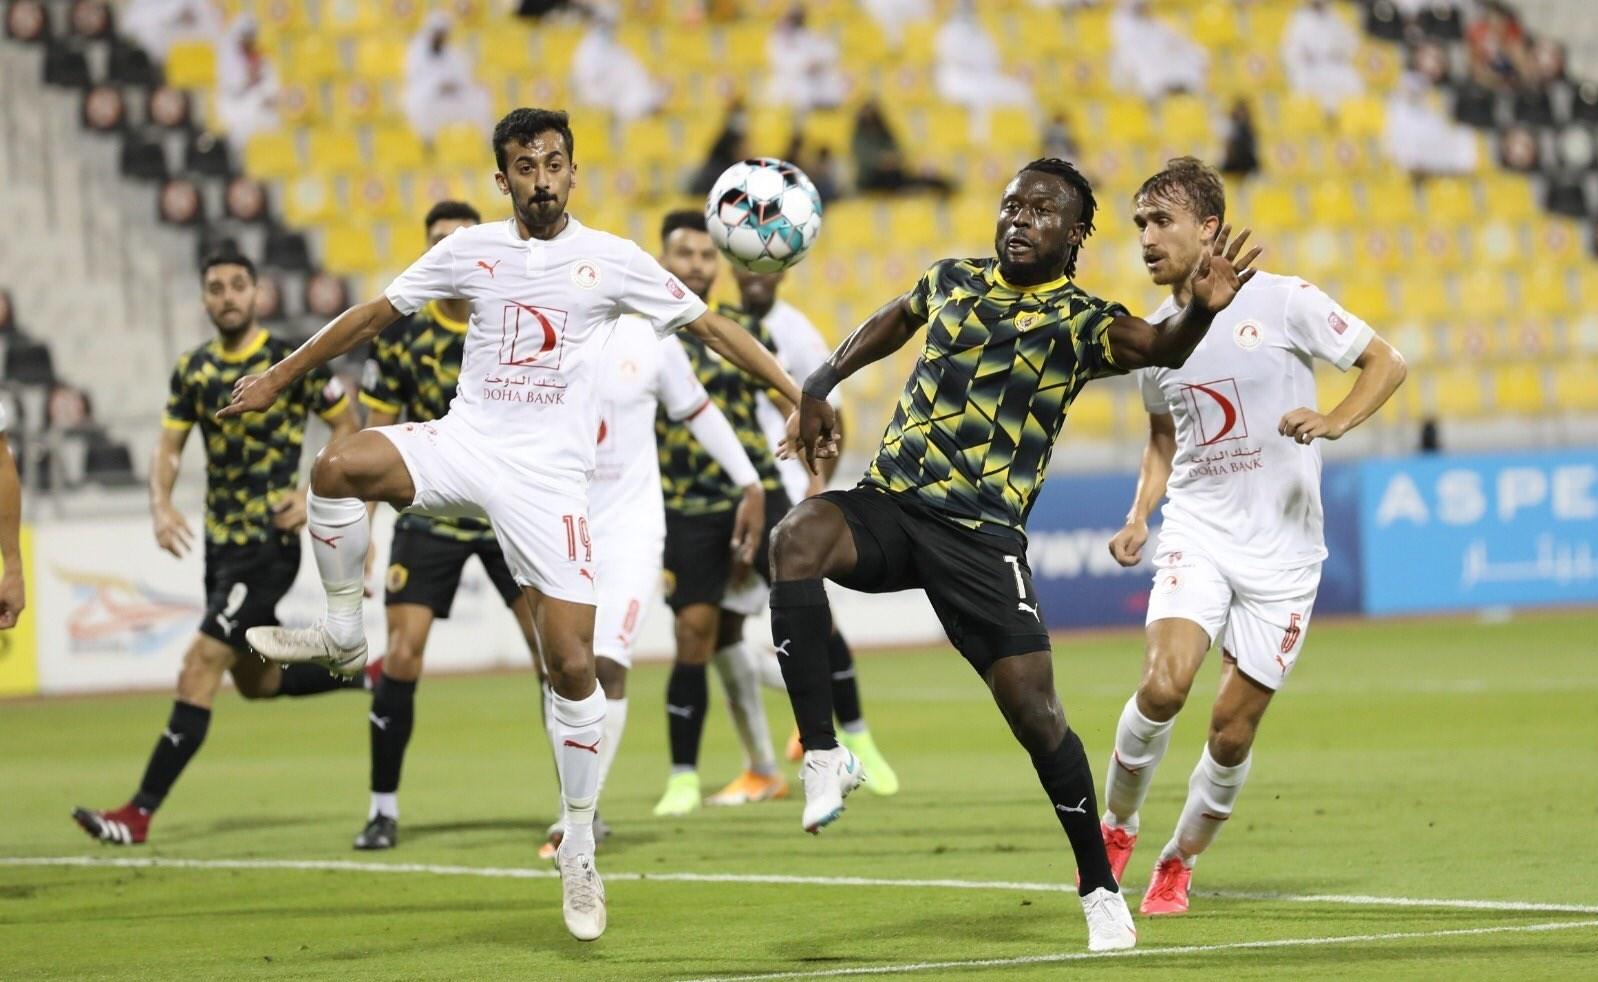 زنگ خطر برای 3 تیم قطری با لژیونر ایرانی